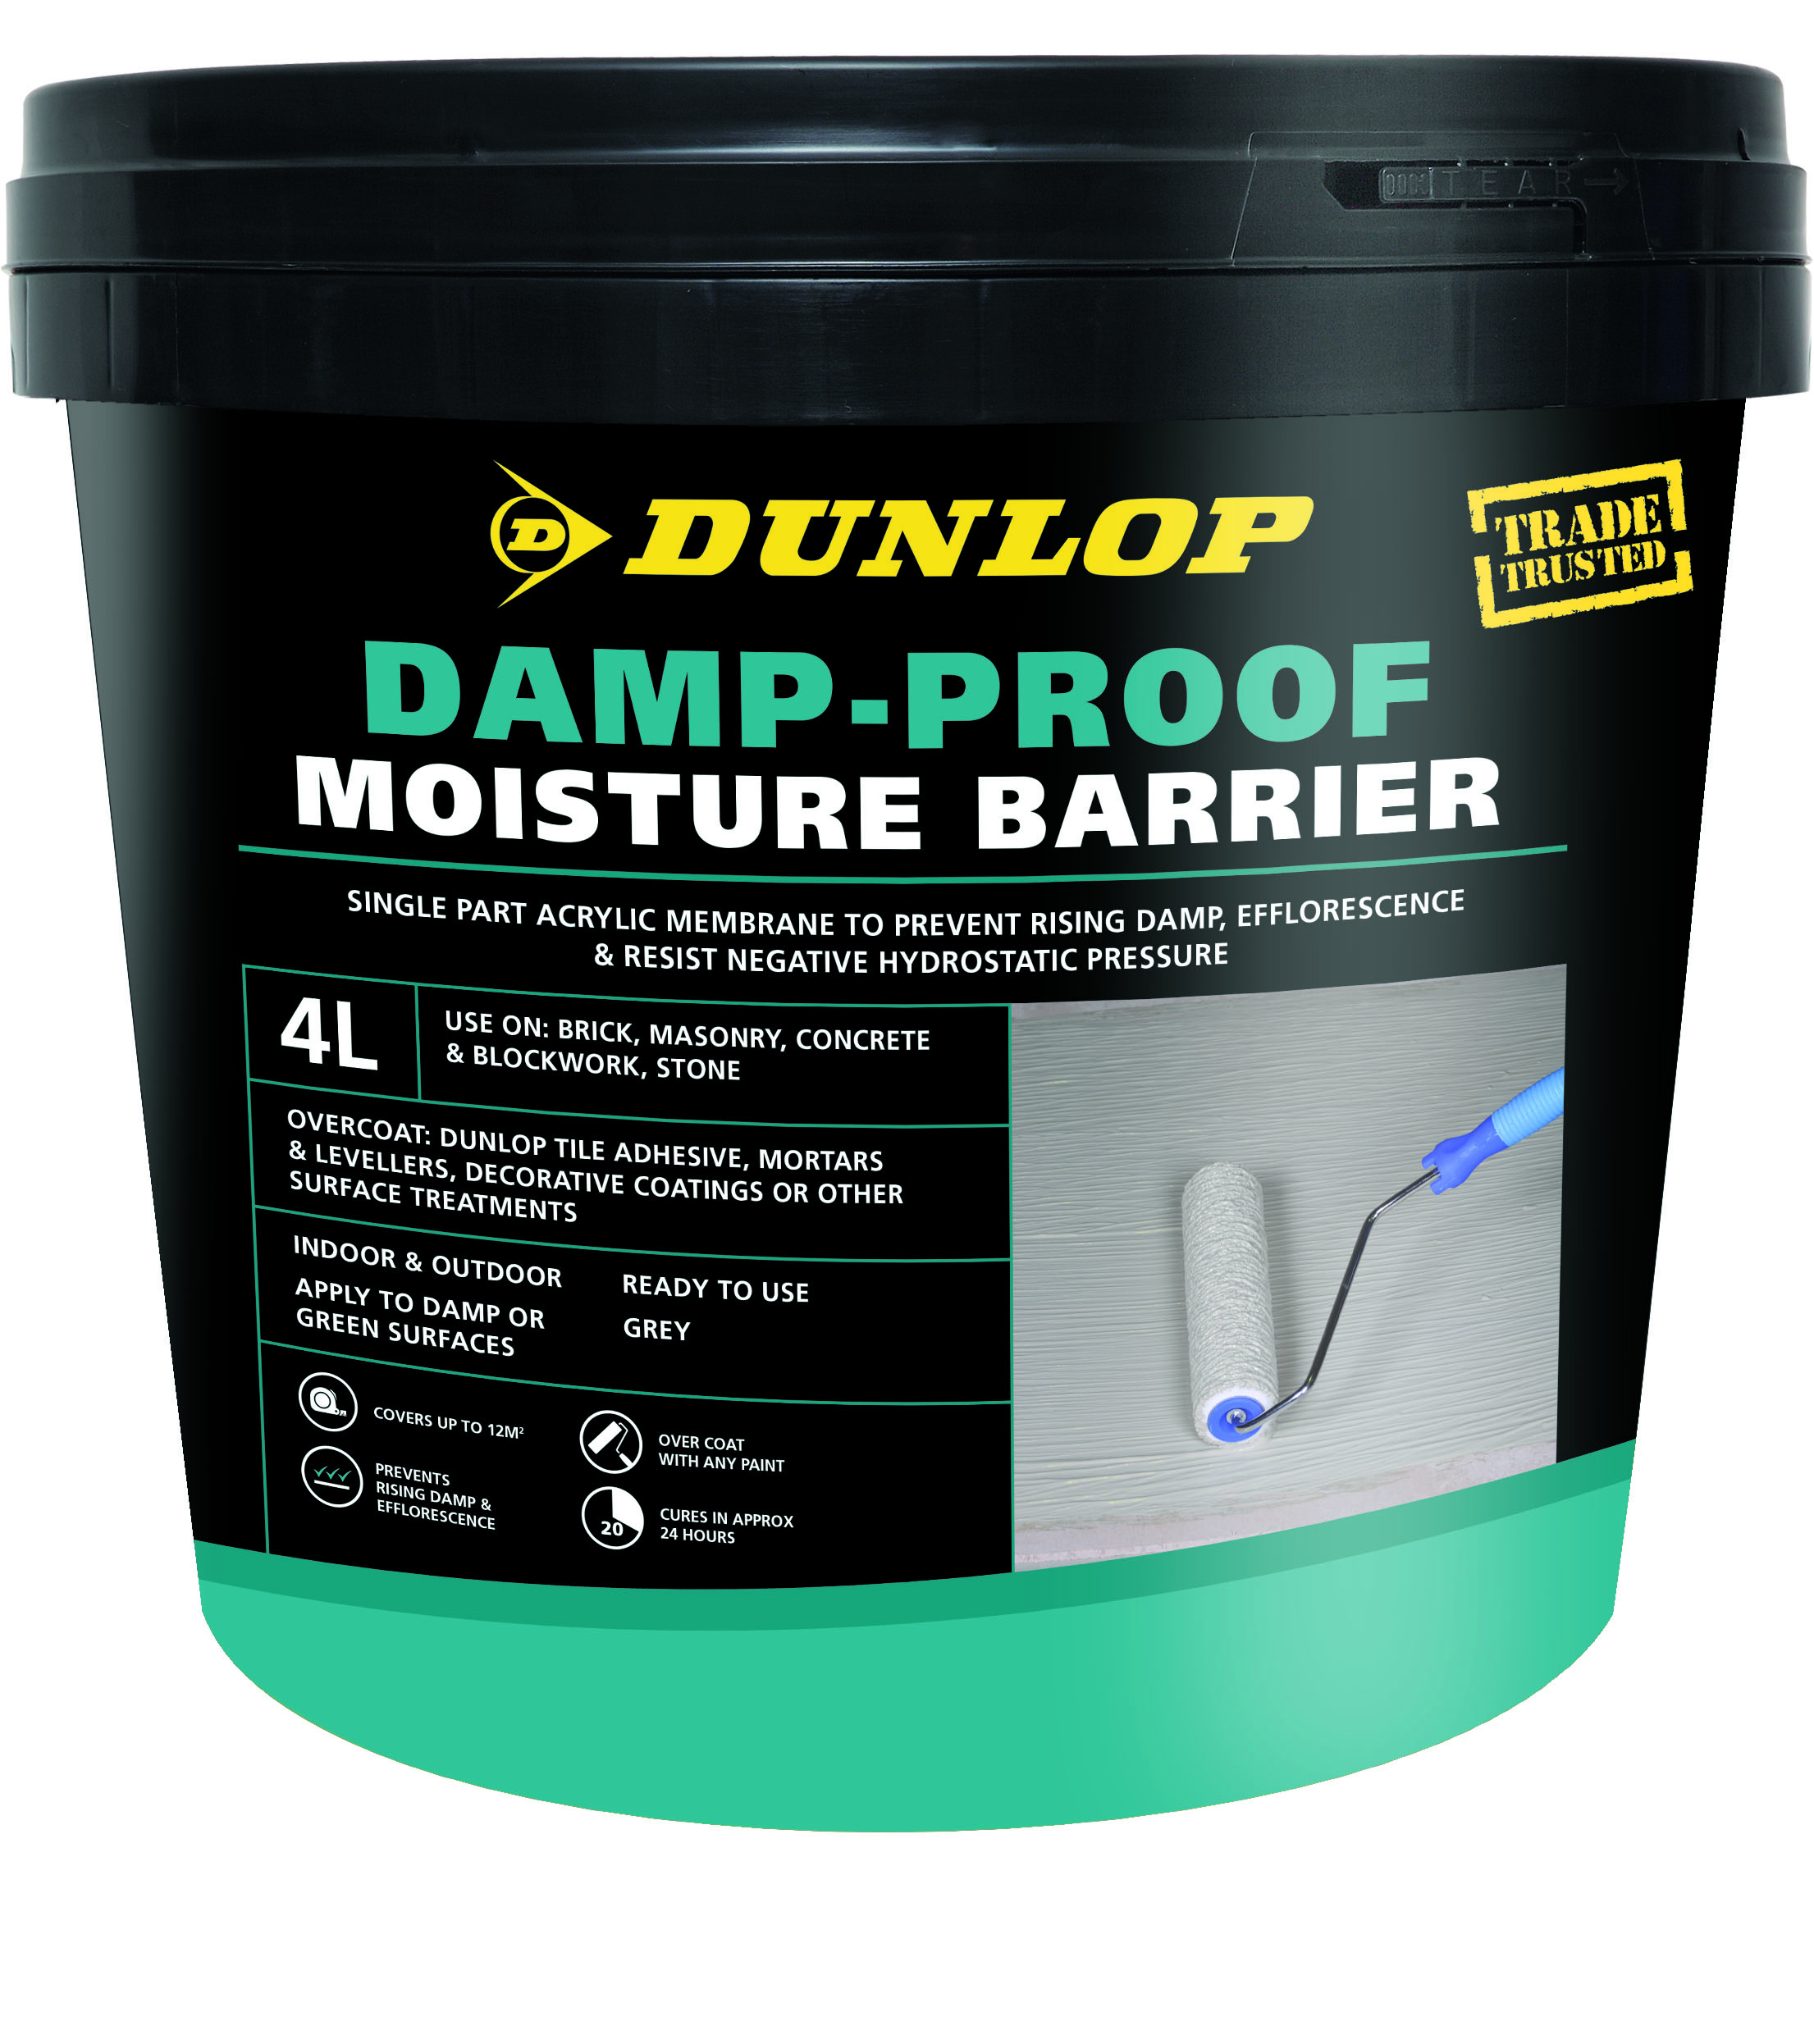 Browse Dunlop Vinyl Adhesive - Dunlop Trade